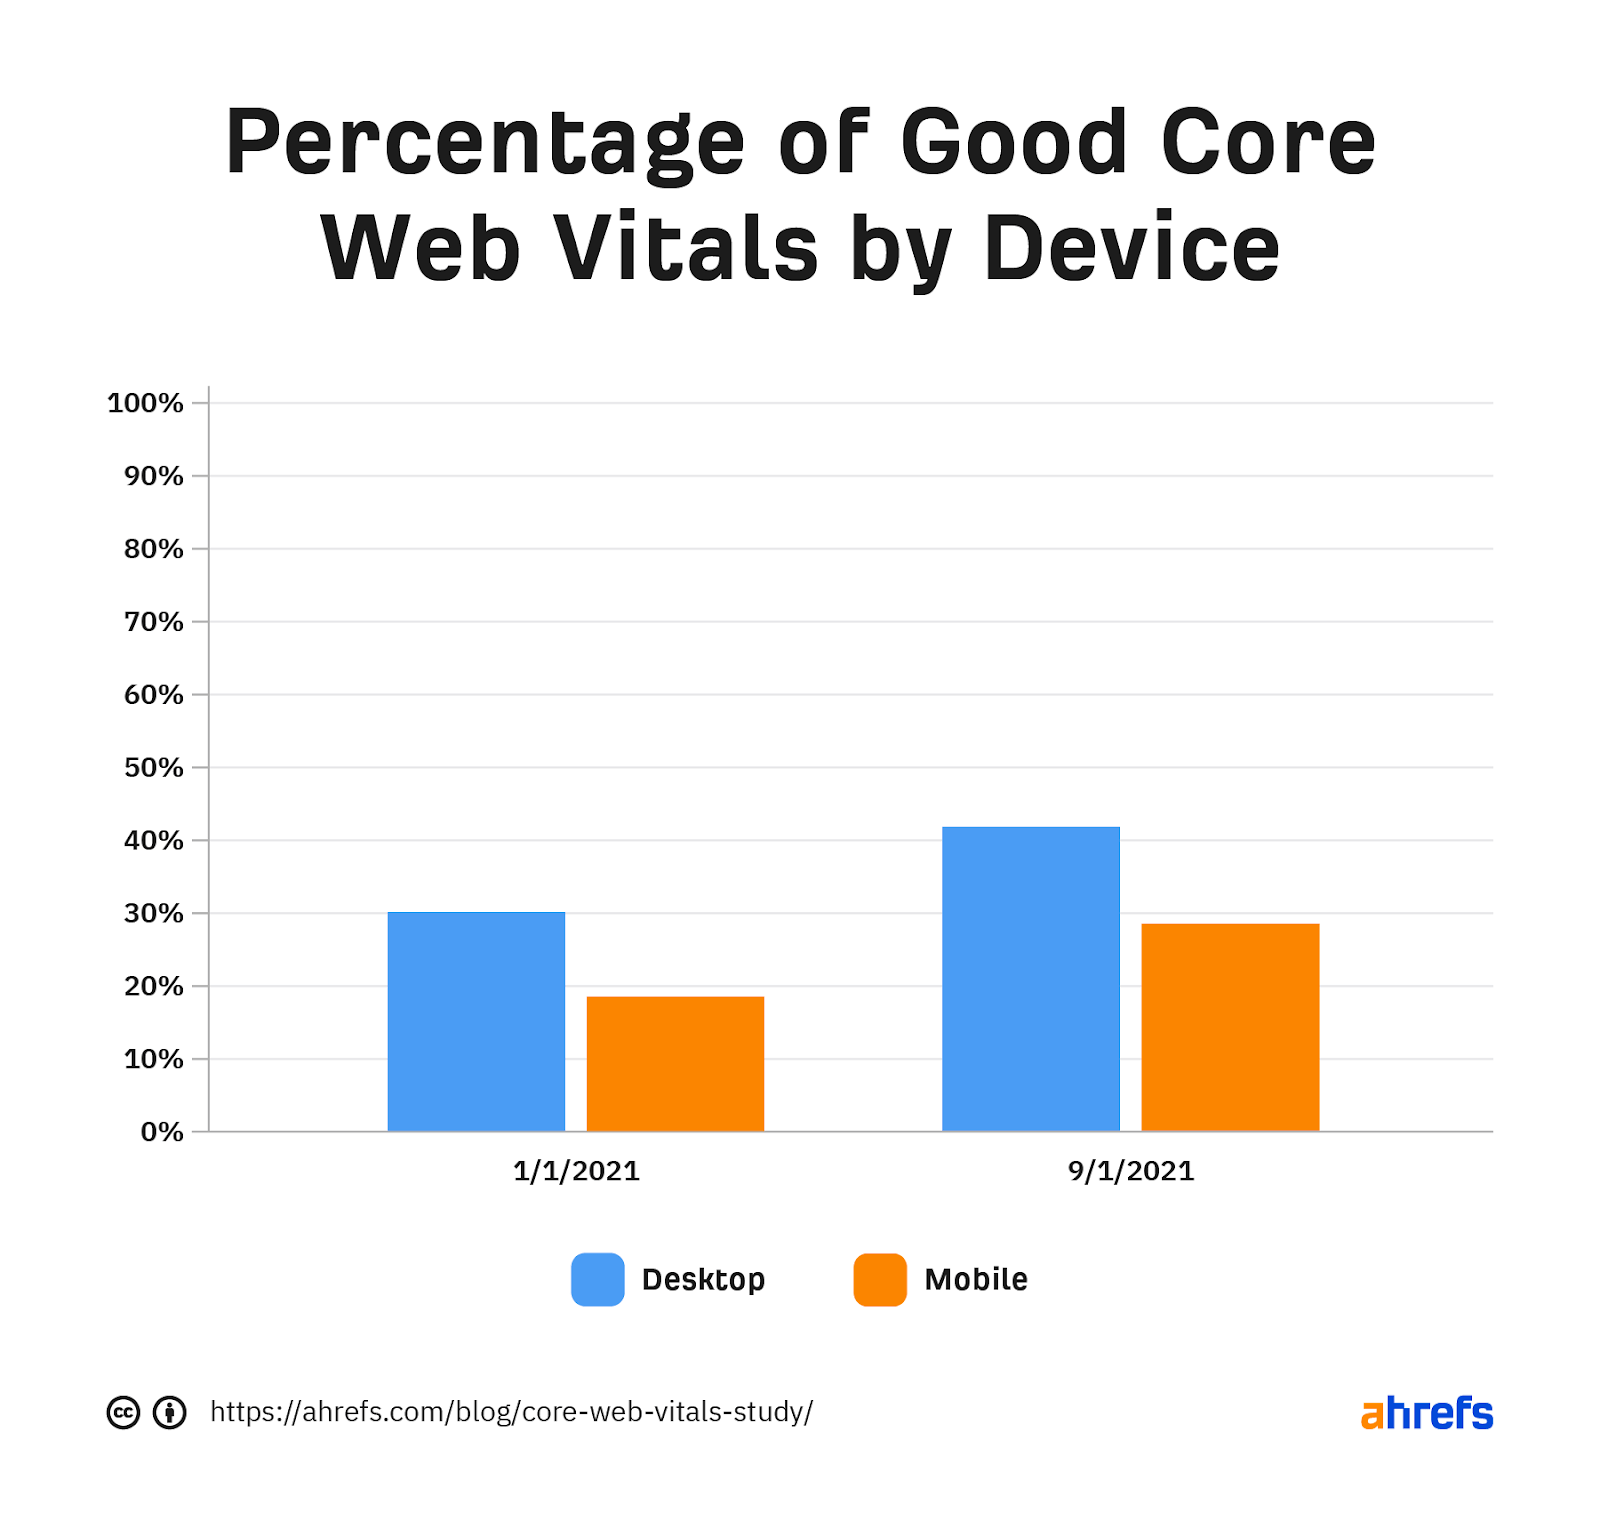 نموداری که درصد Core Web Vitals خوب را بر اساس دستگاه نشان می دهد